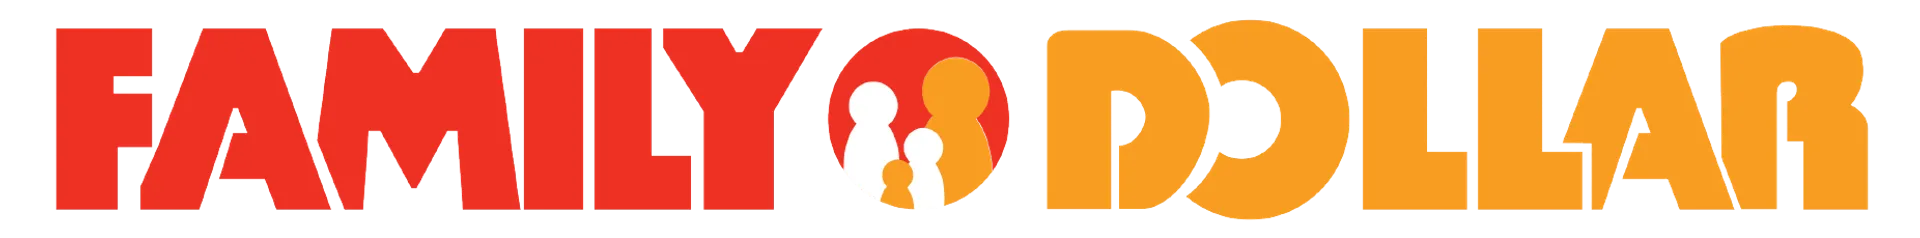 FAMILY DOLLAR logo de catálogo